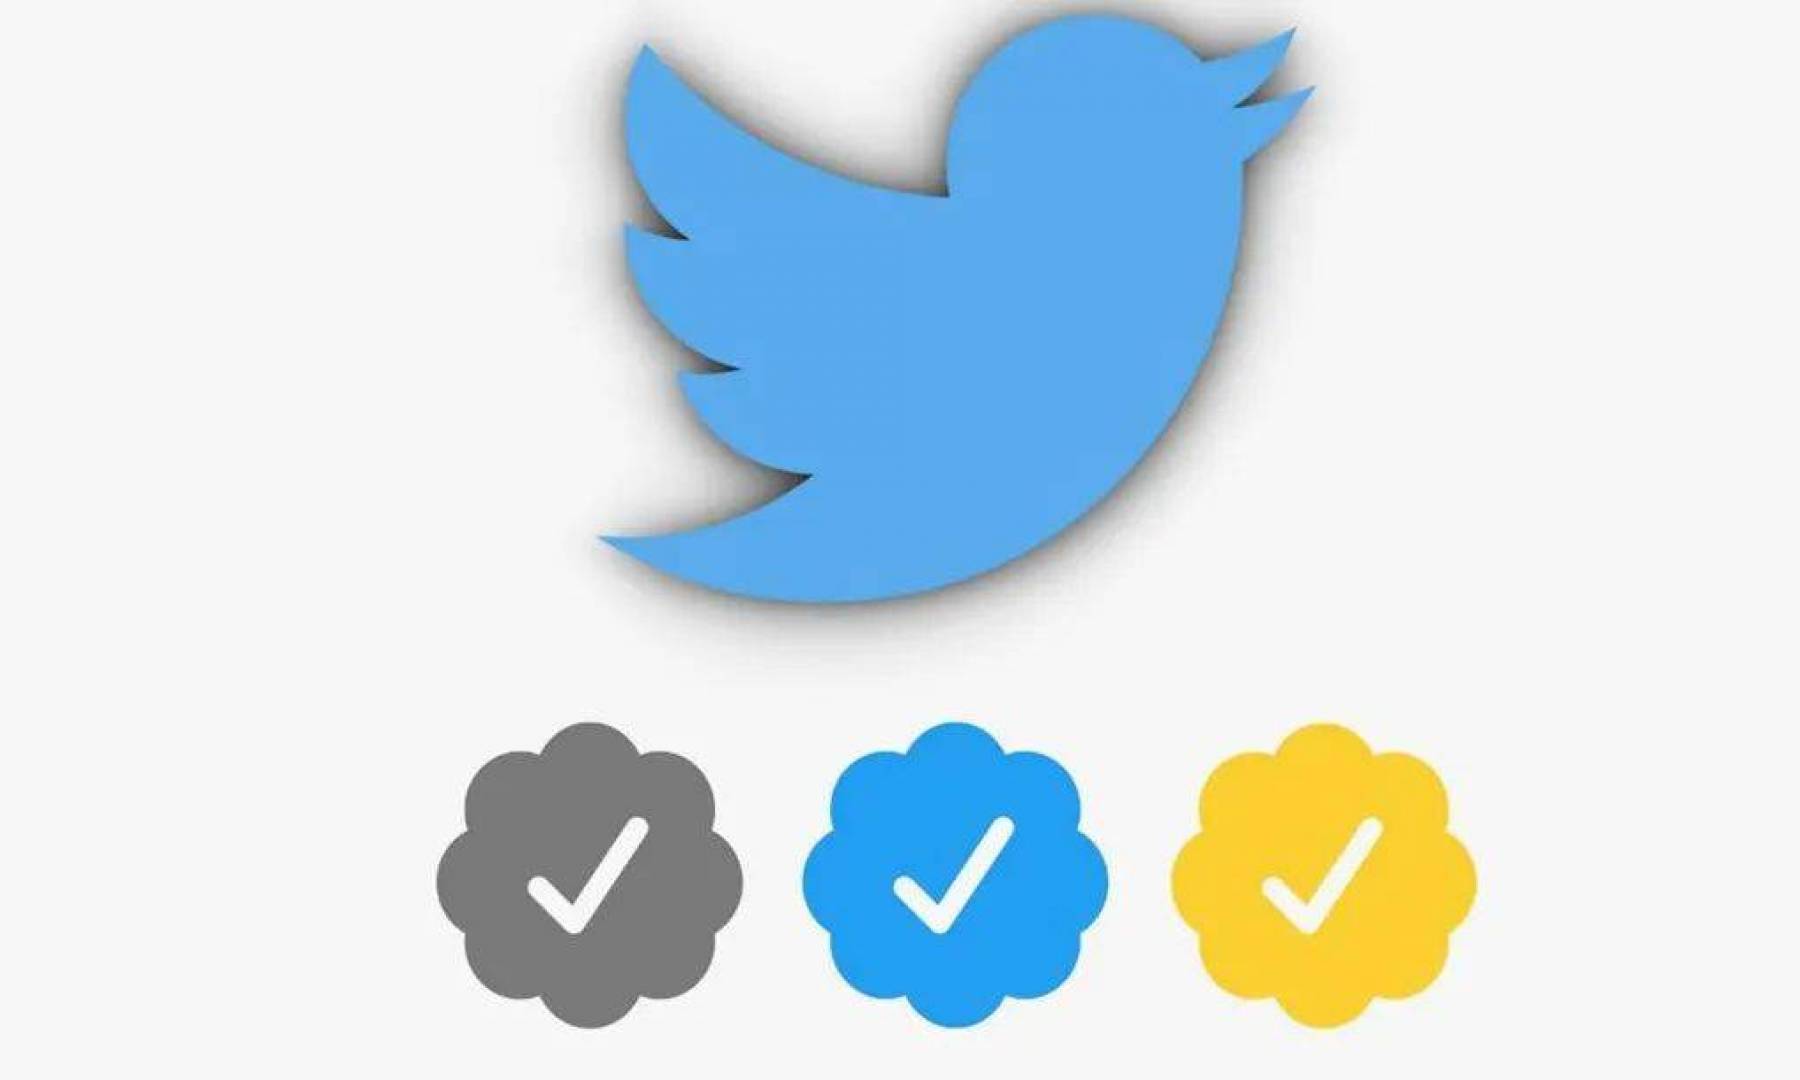 كل ما تريد معرفته عن علامة التوثيق الزرقاء و الصفراء والرمادية على تويتر؟